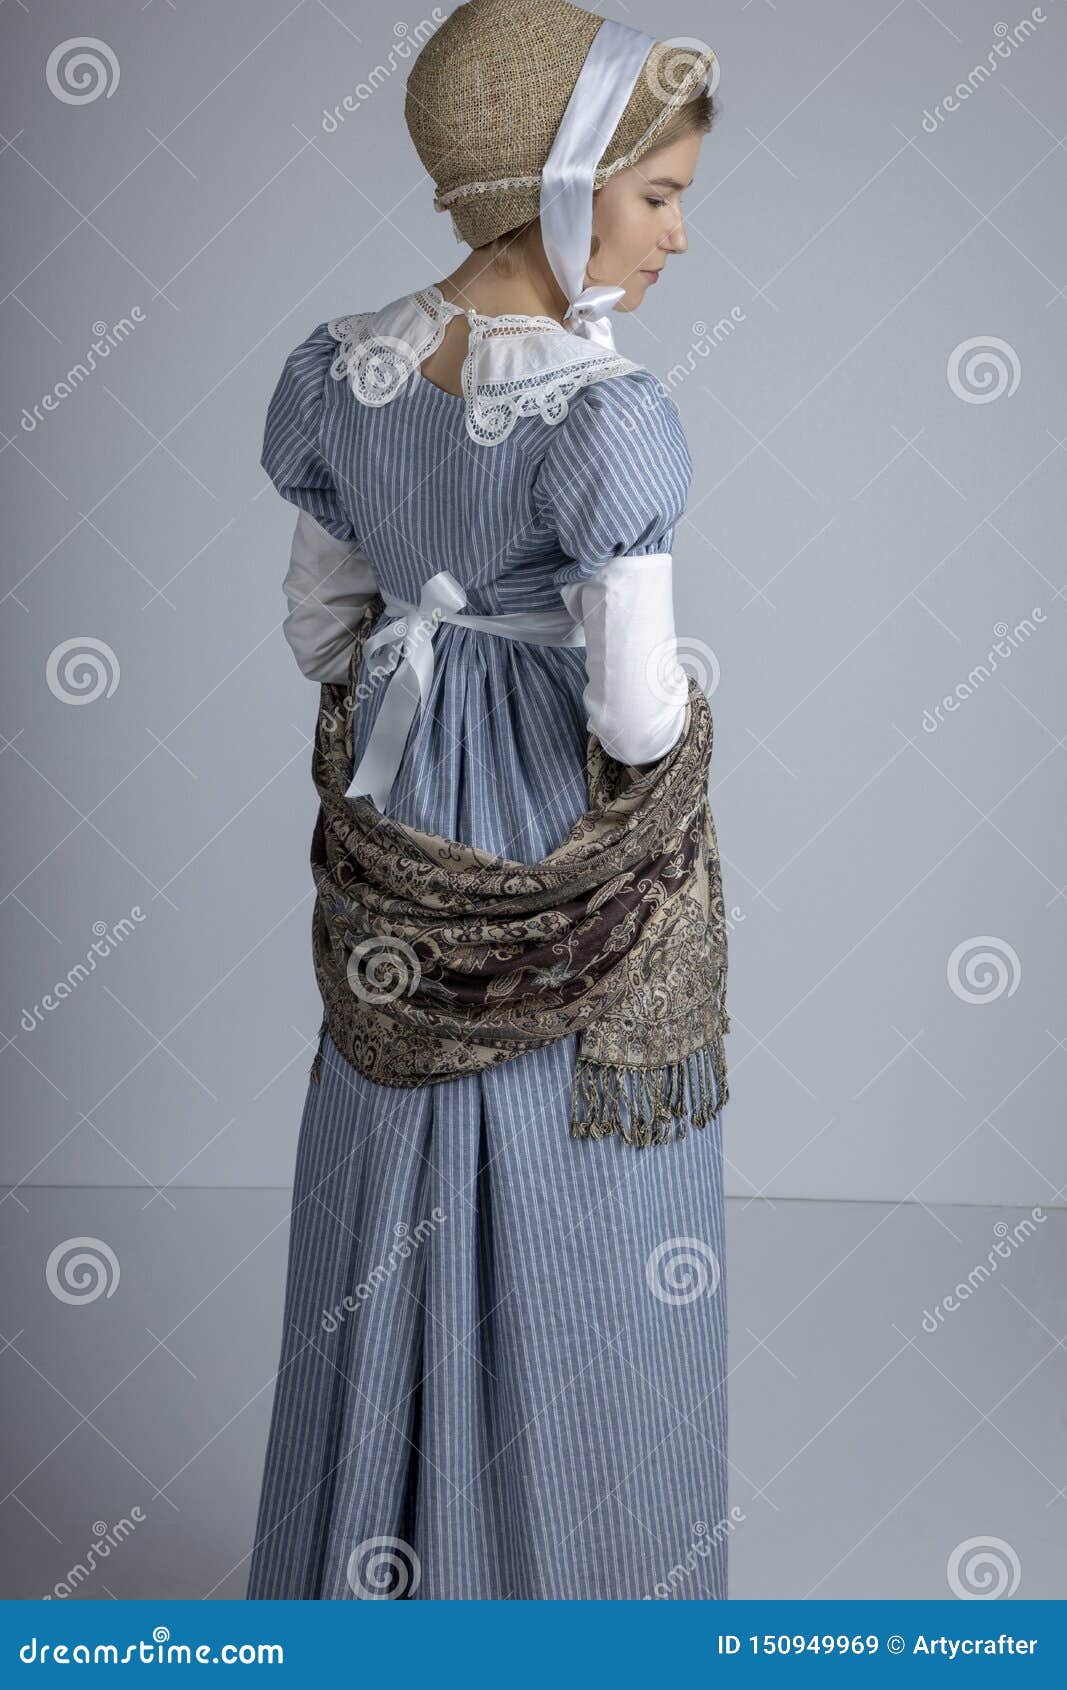 regency woman in blue striped dress on plain background